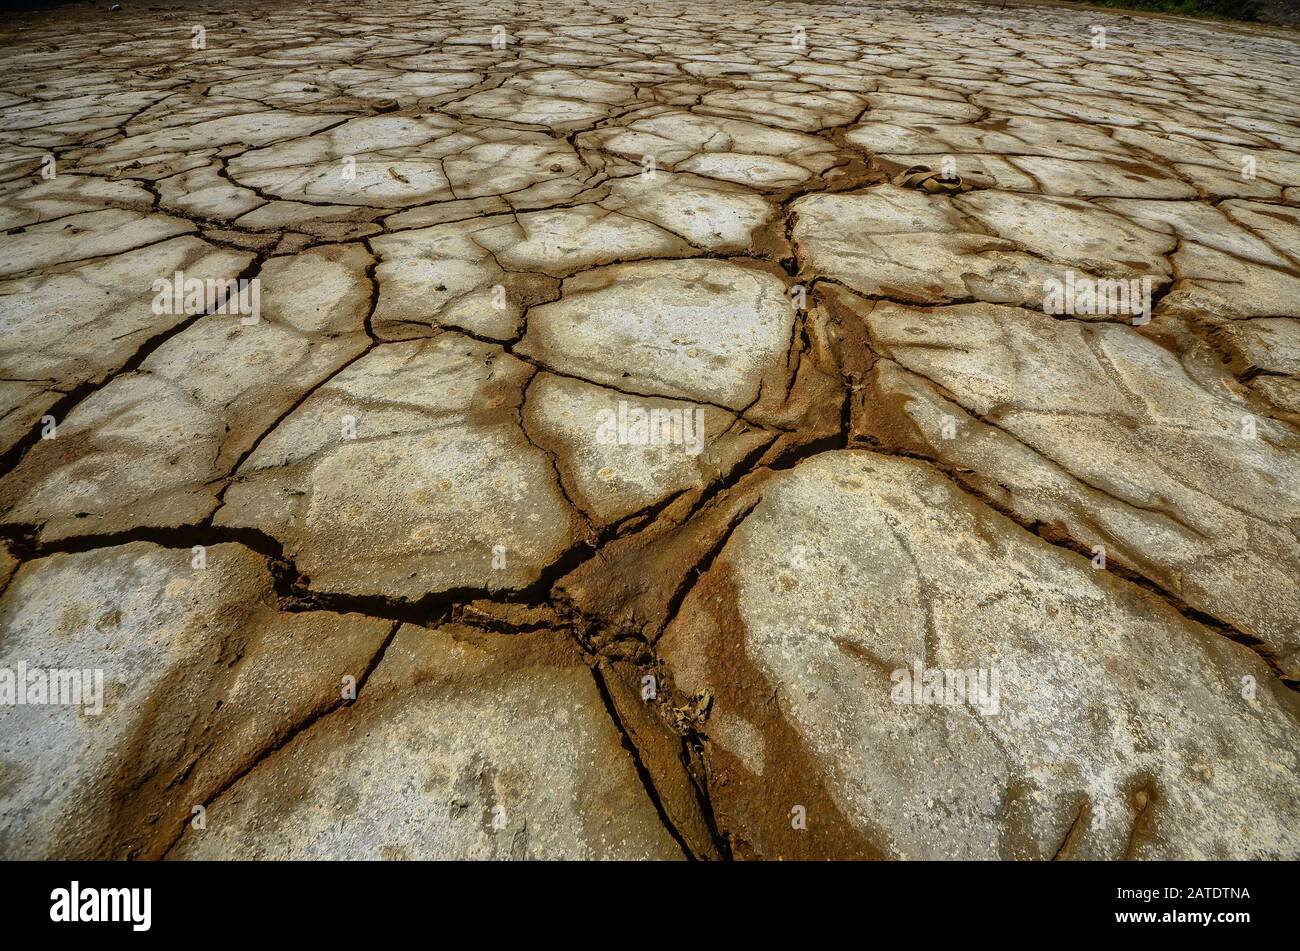 Umweltproblem. Ergebnis der Gewinnung und Verarbeitung der Kupfererz-Siedlung Karabash. Russland. Hintergrund des toten Bodens Stockfoto